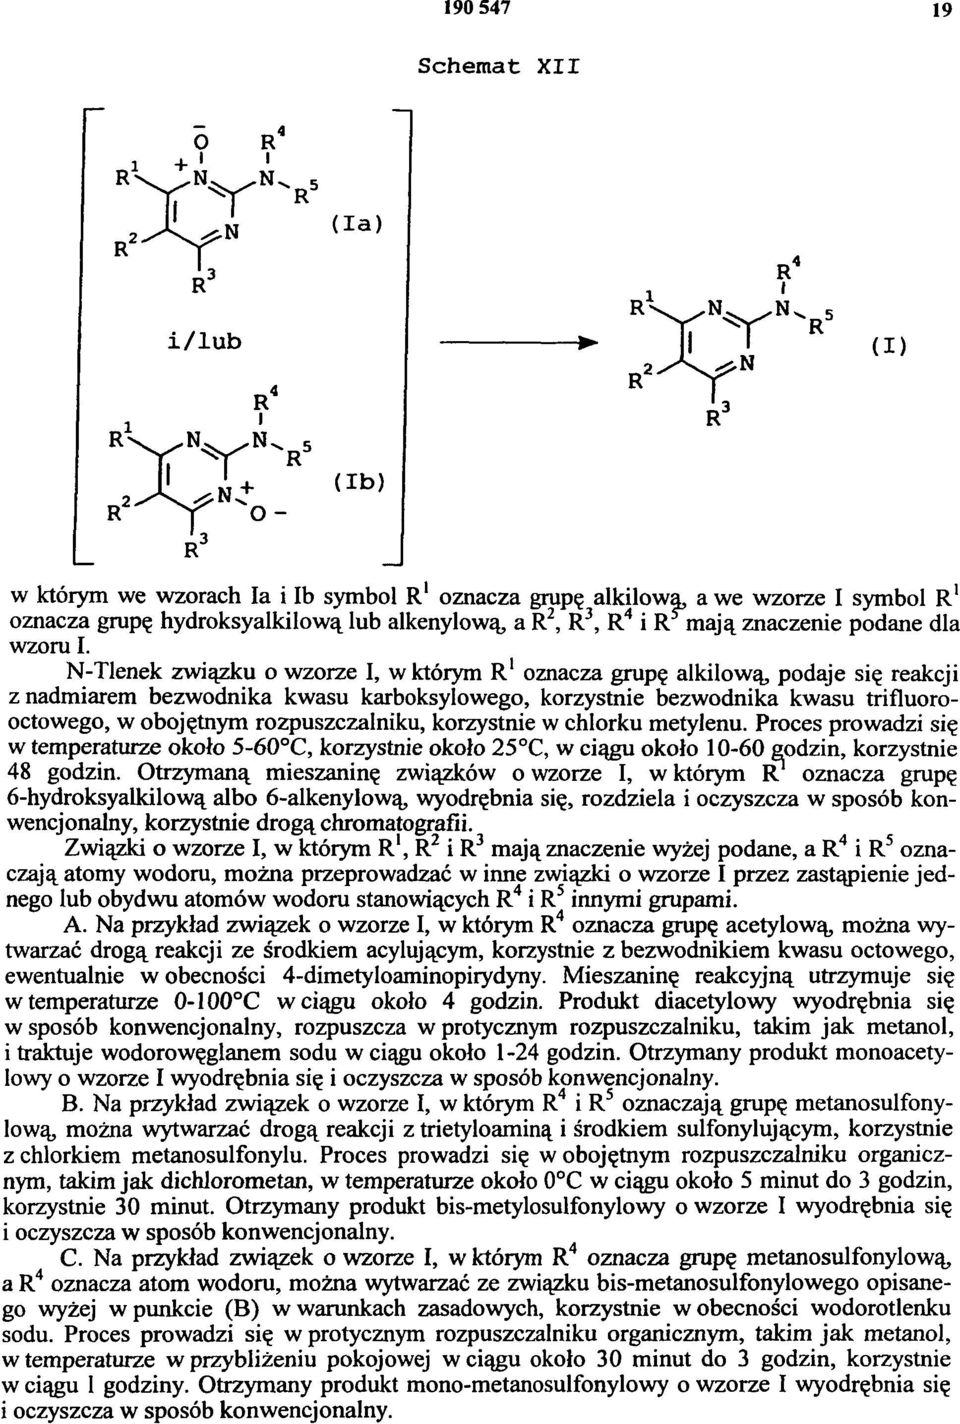 N-Tlenek związku o wzorze I, w którym R 1oznacza grupę alkilową, podaje się reakcji z nadmiarem bezwodnika kwasu karboksylowego, korzystnie bezwodnika kwasu trifluorooctowego, w obojętnym